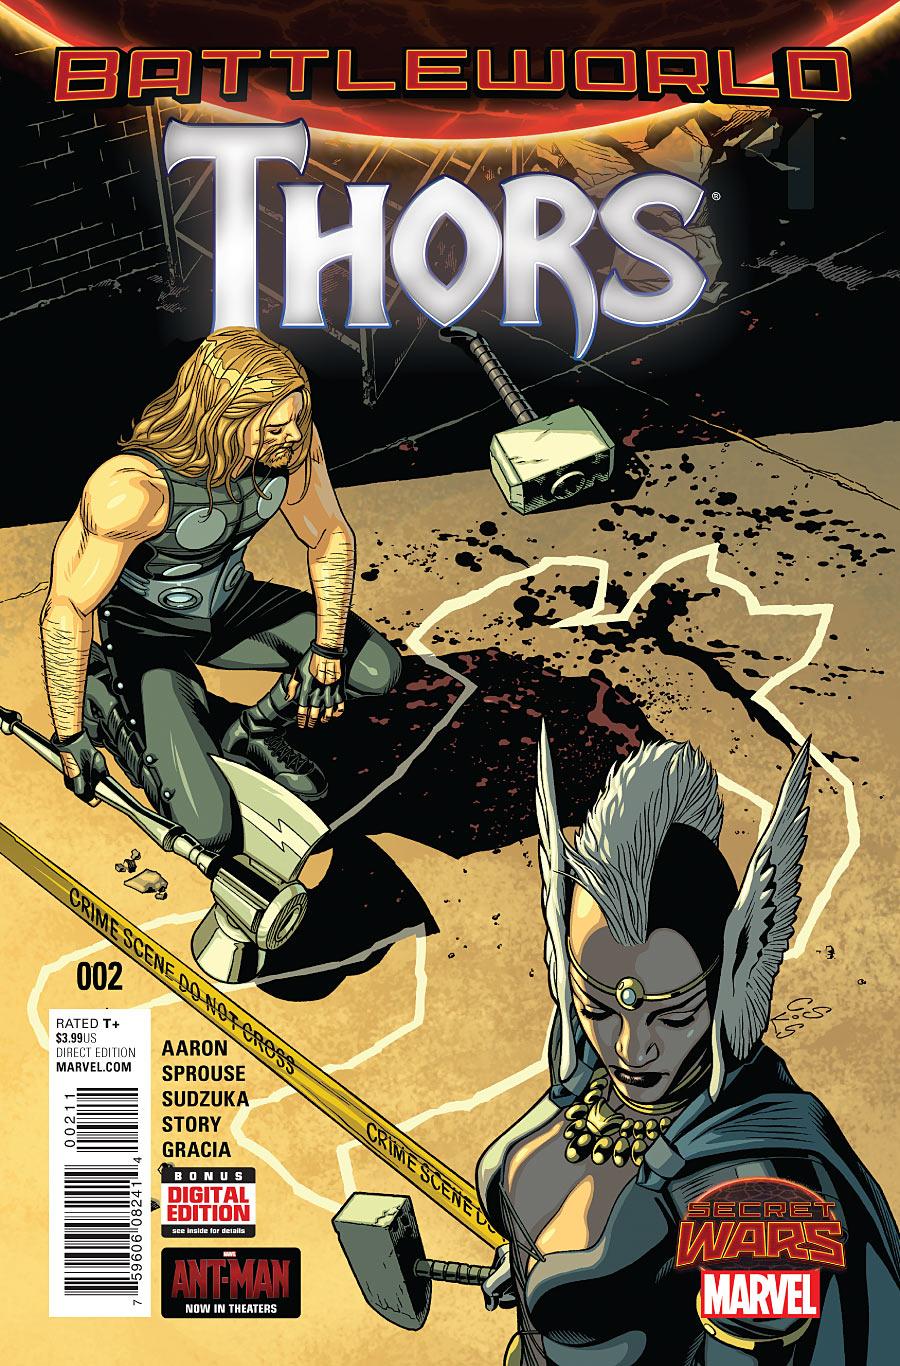 Thors Vol. 1 #2